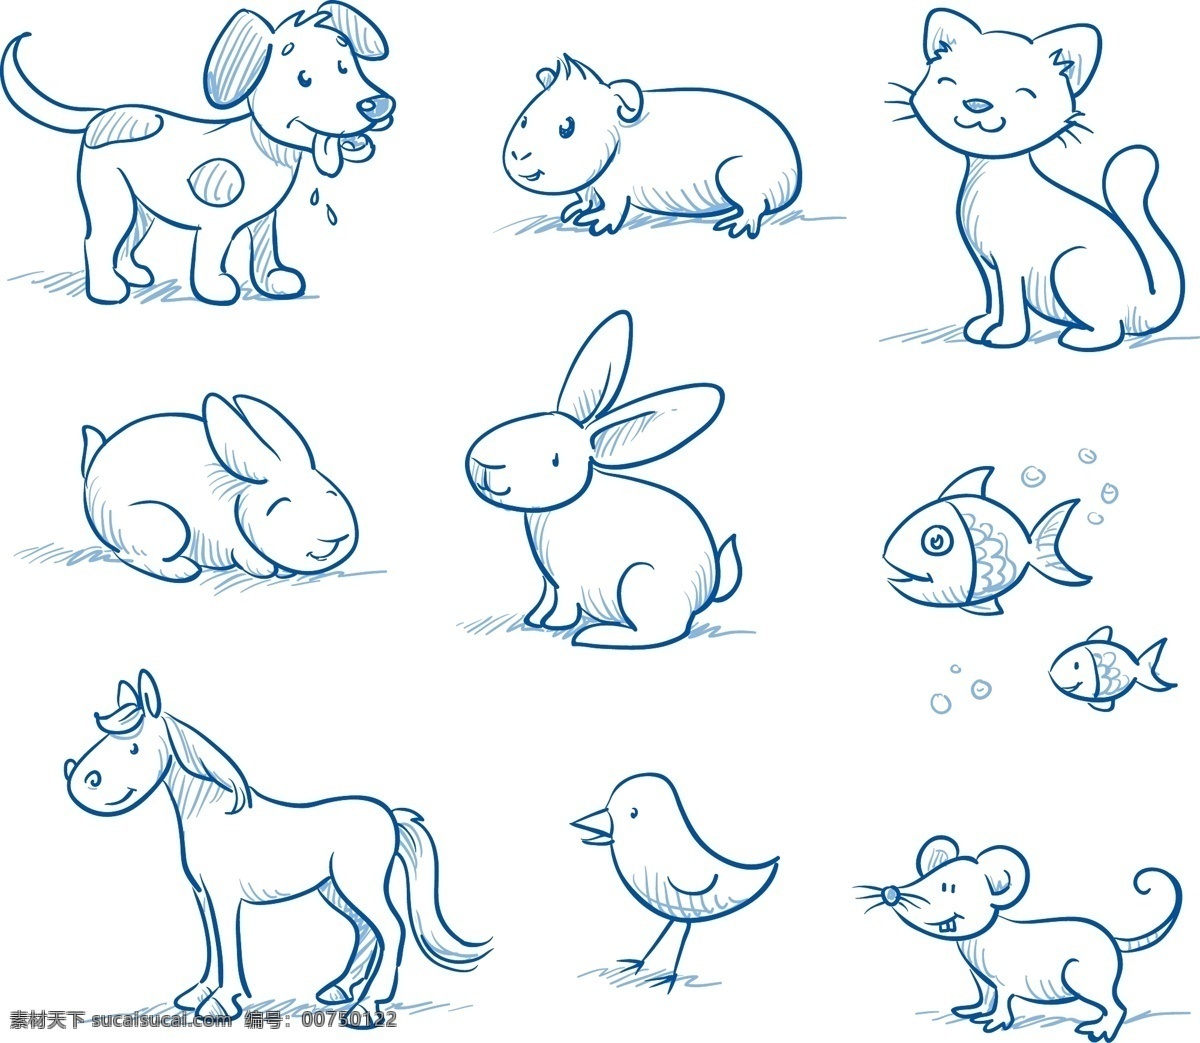 手绘 可爱 小 动物 插画 简笔画 小动物 小狗 小猫 兔子